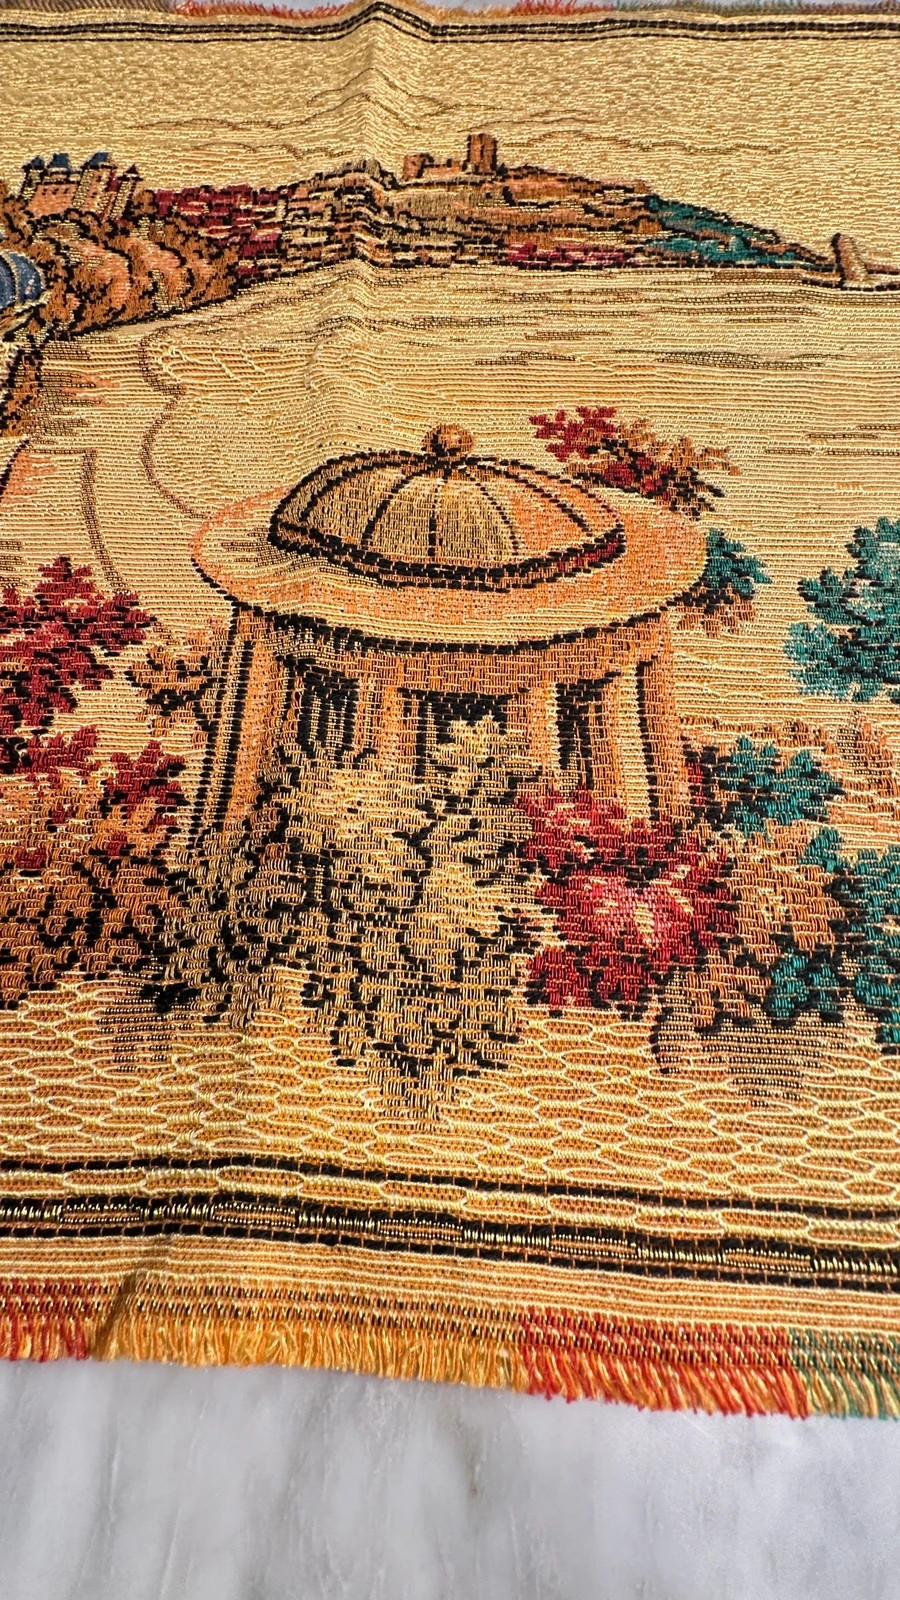 Gobelin makatka obrazek haftowany kilim